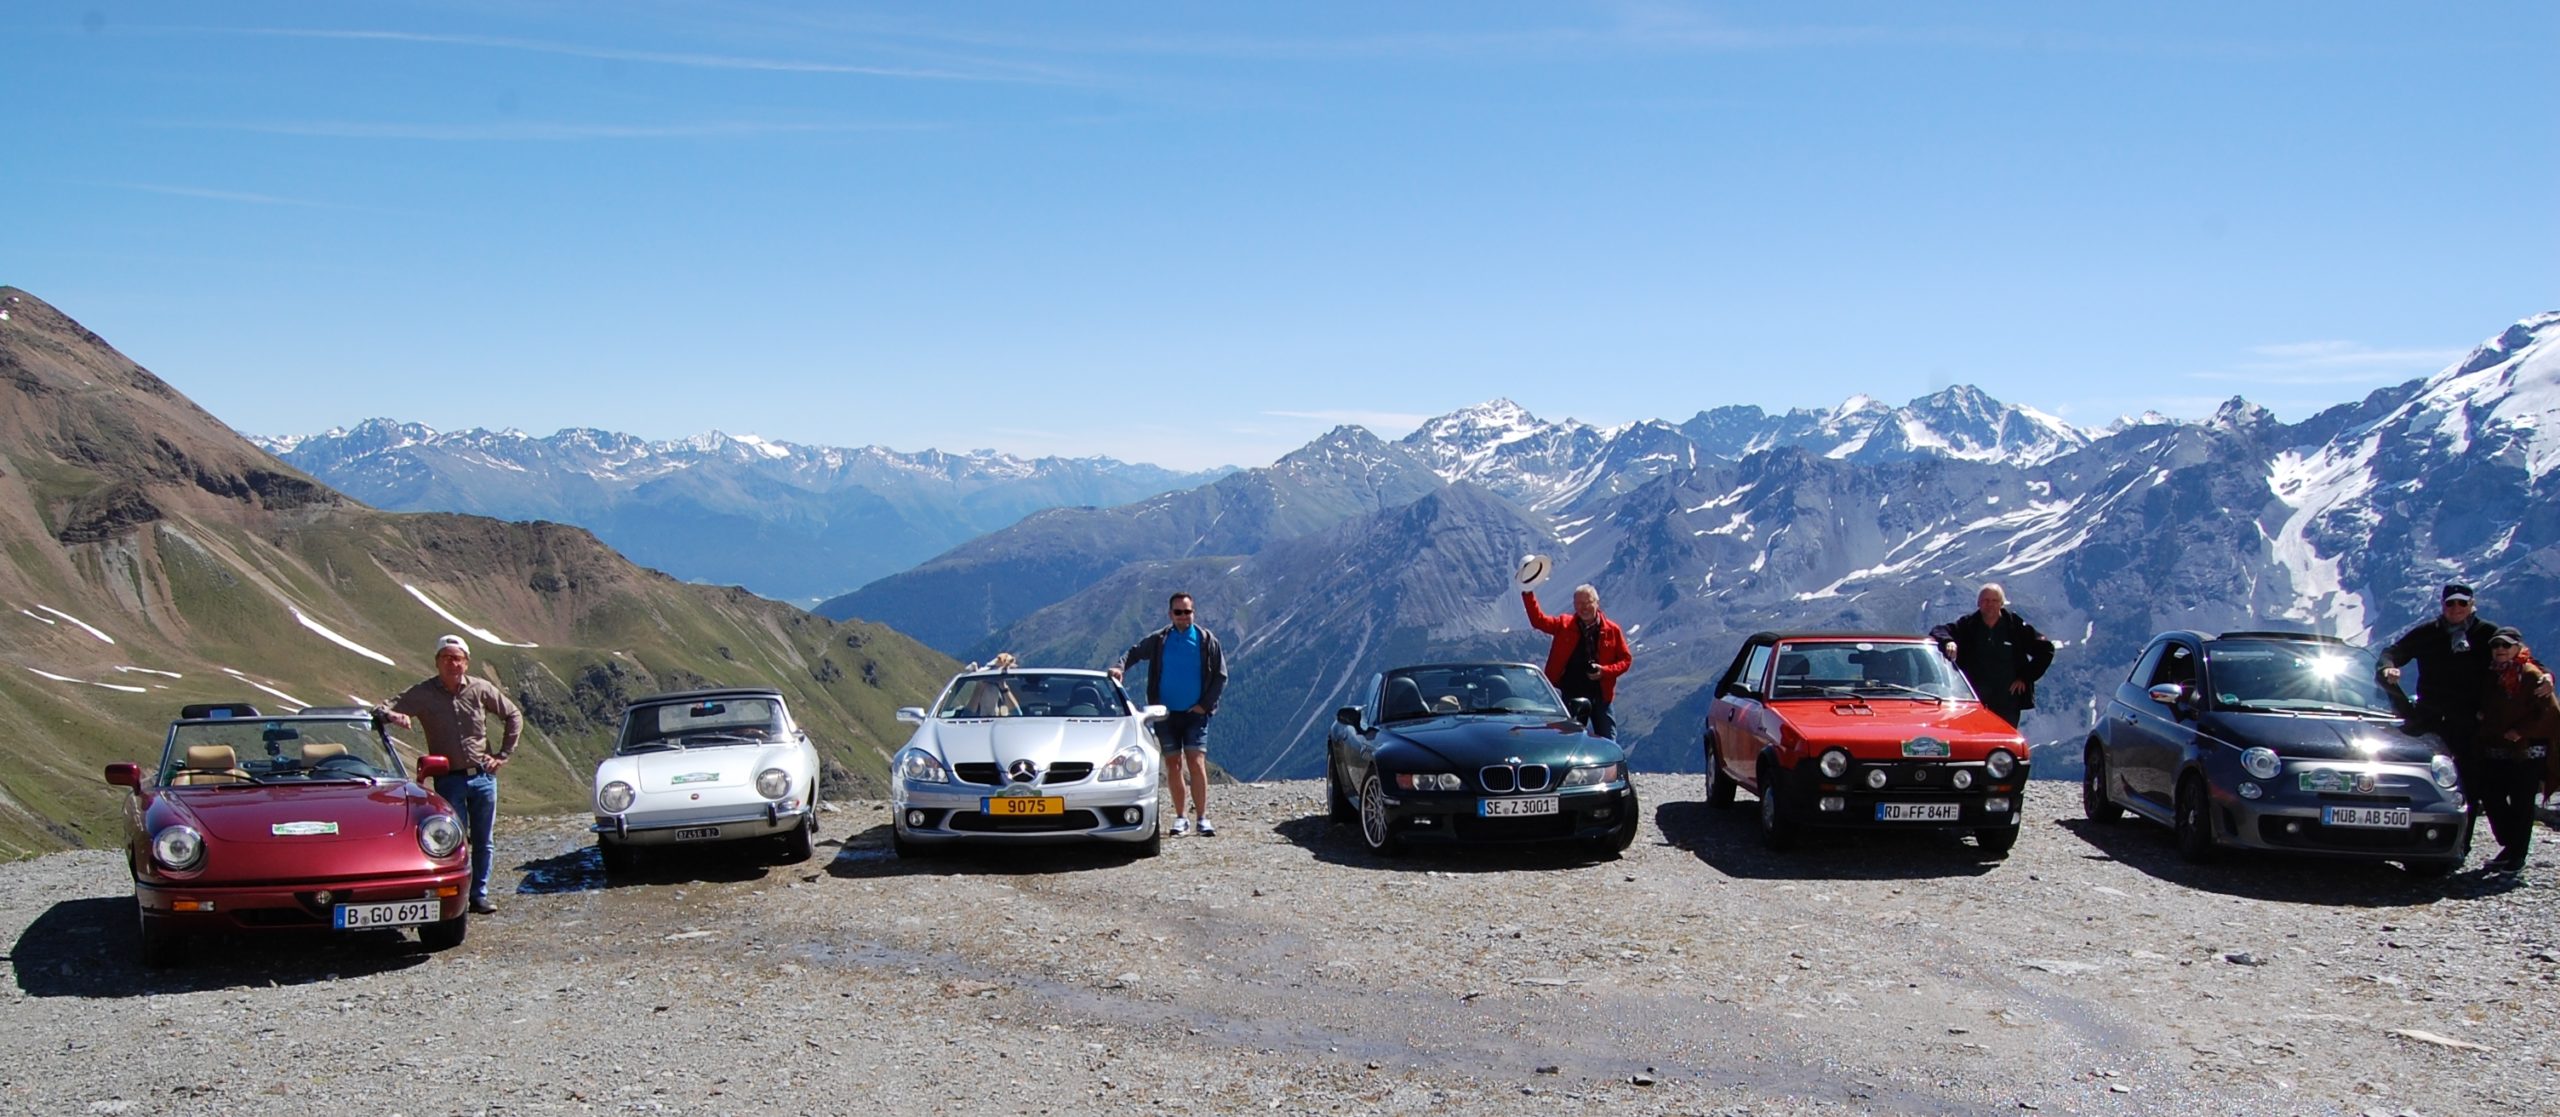 2018 002 scaled - Oldtimer Tour 2023: Kaiserin Sissis Cabrio Days durch die Dolomiten Südtirols